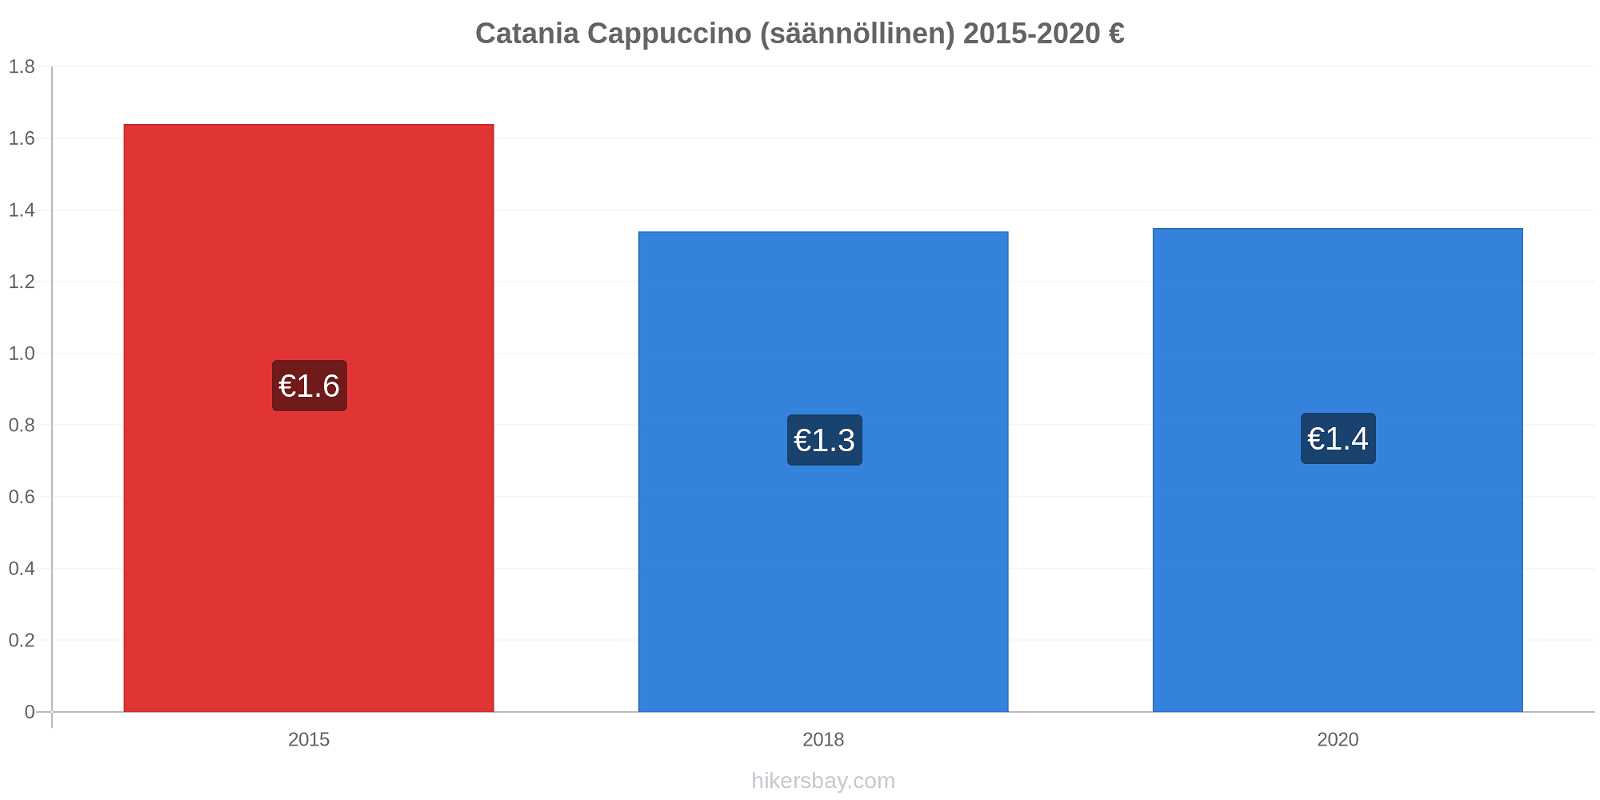 Catania hintojen muutokset Cappuccino (säännöllinen) hikersbay.com